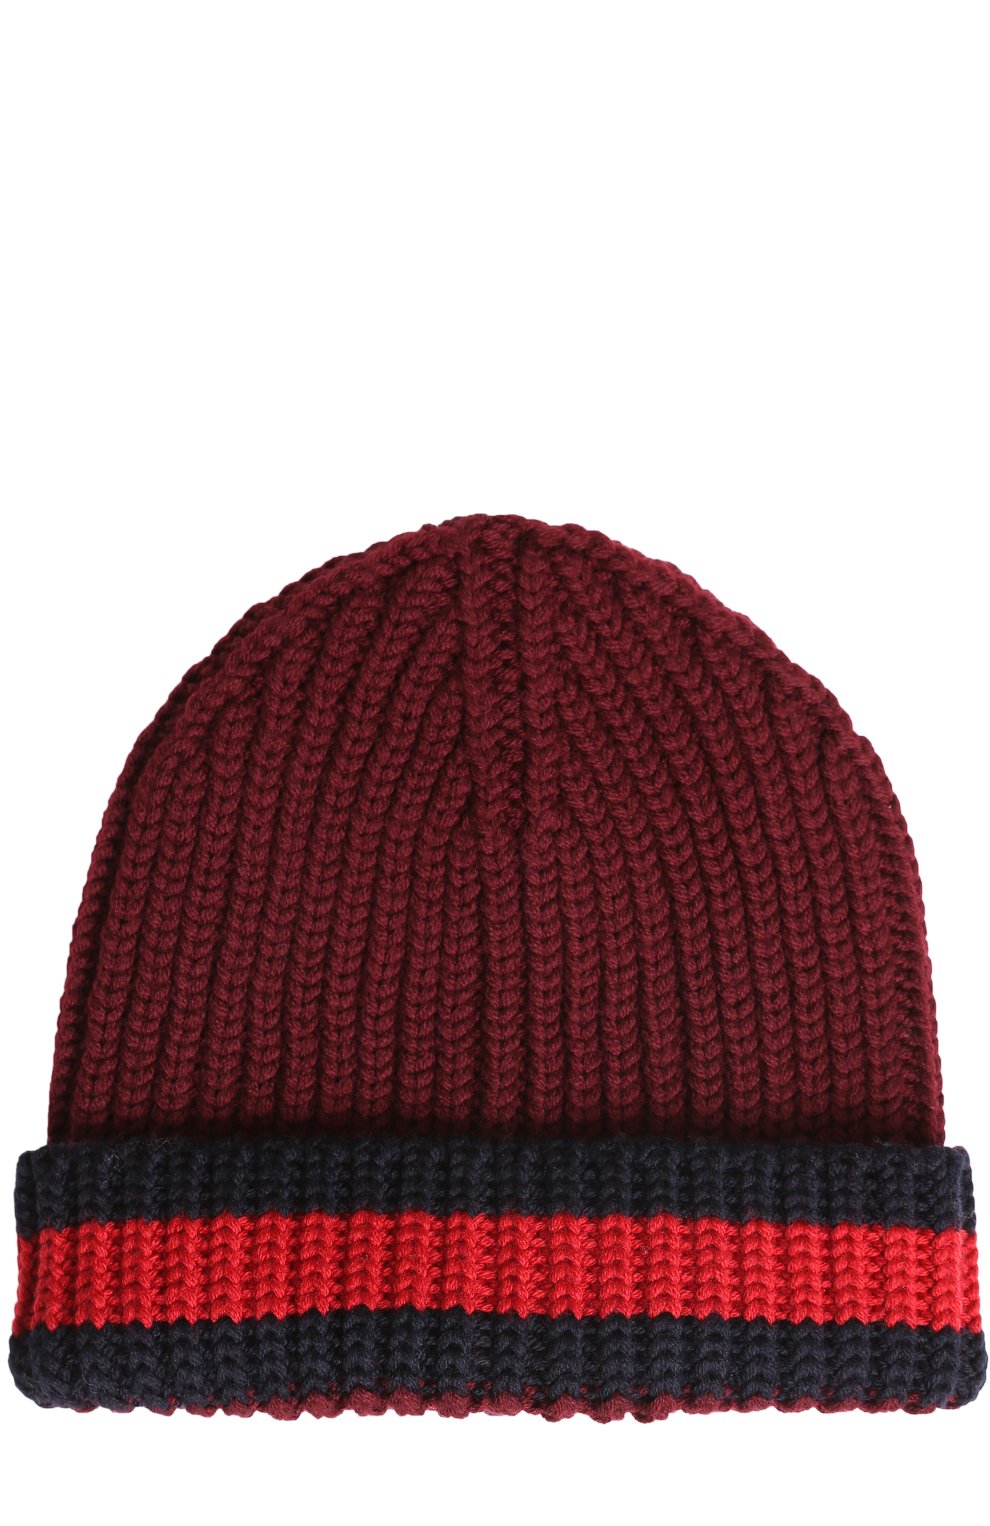 Мужская шерстяная шапка GUCCI бордового цвета, арт. 429753/4G206 | Фото 1 (Материал: Текстиль, Шерсть; Кросс-КТ: Трикотаж)